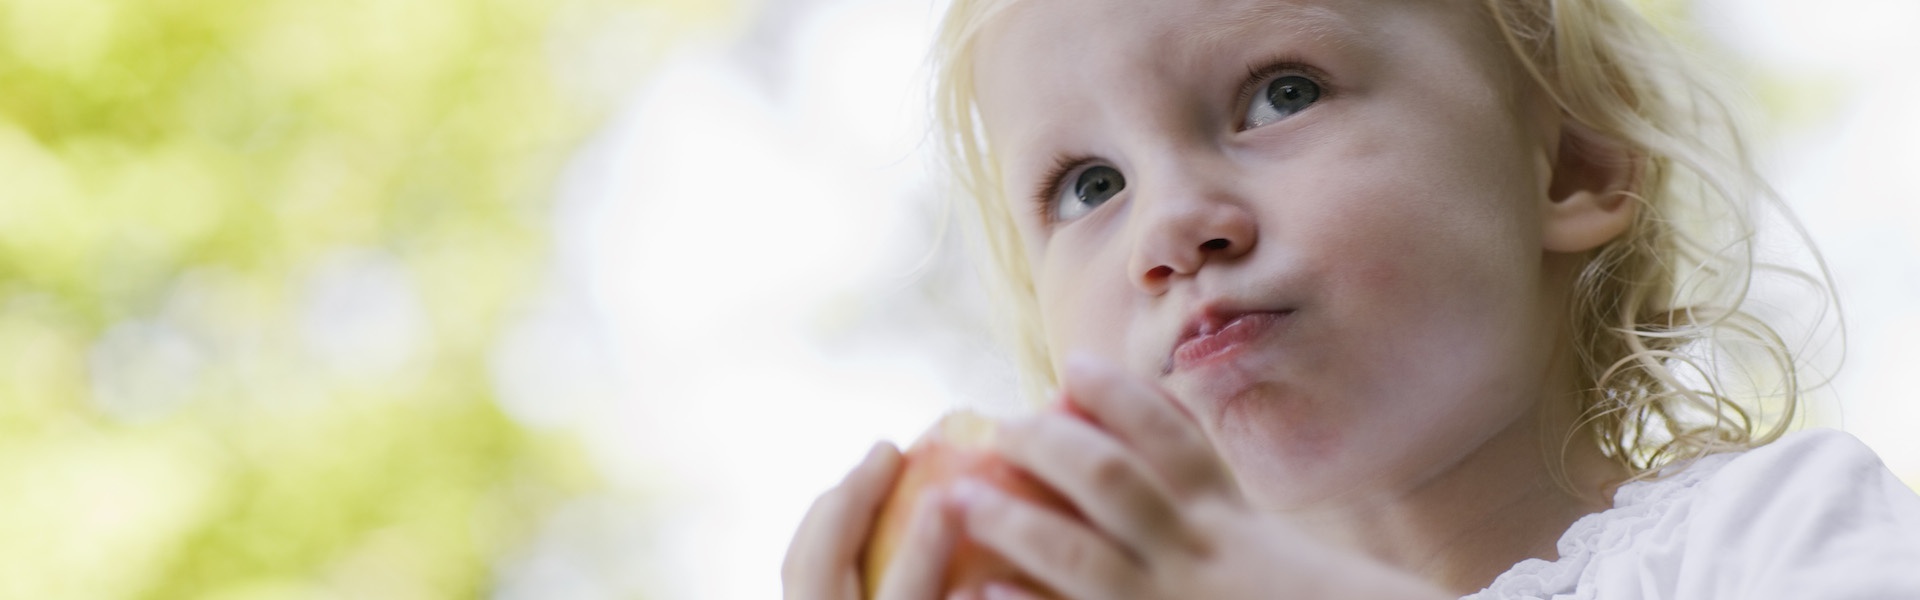 Ein Mädchen isst einen Apfel (Foto)